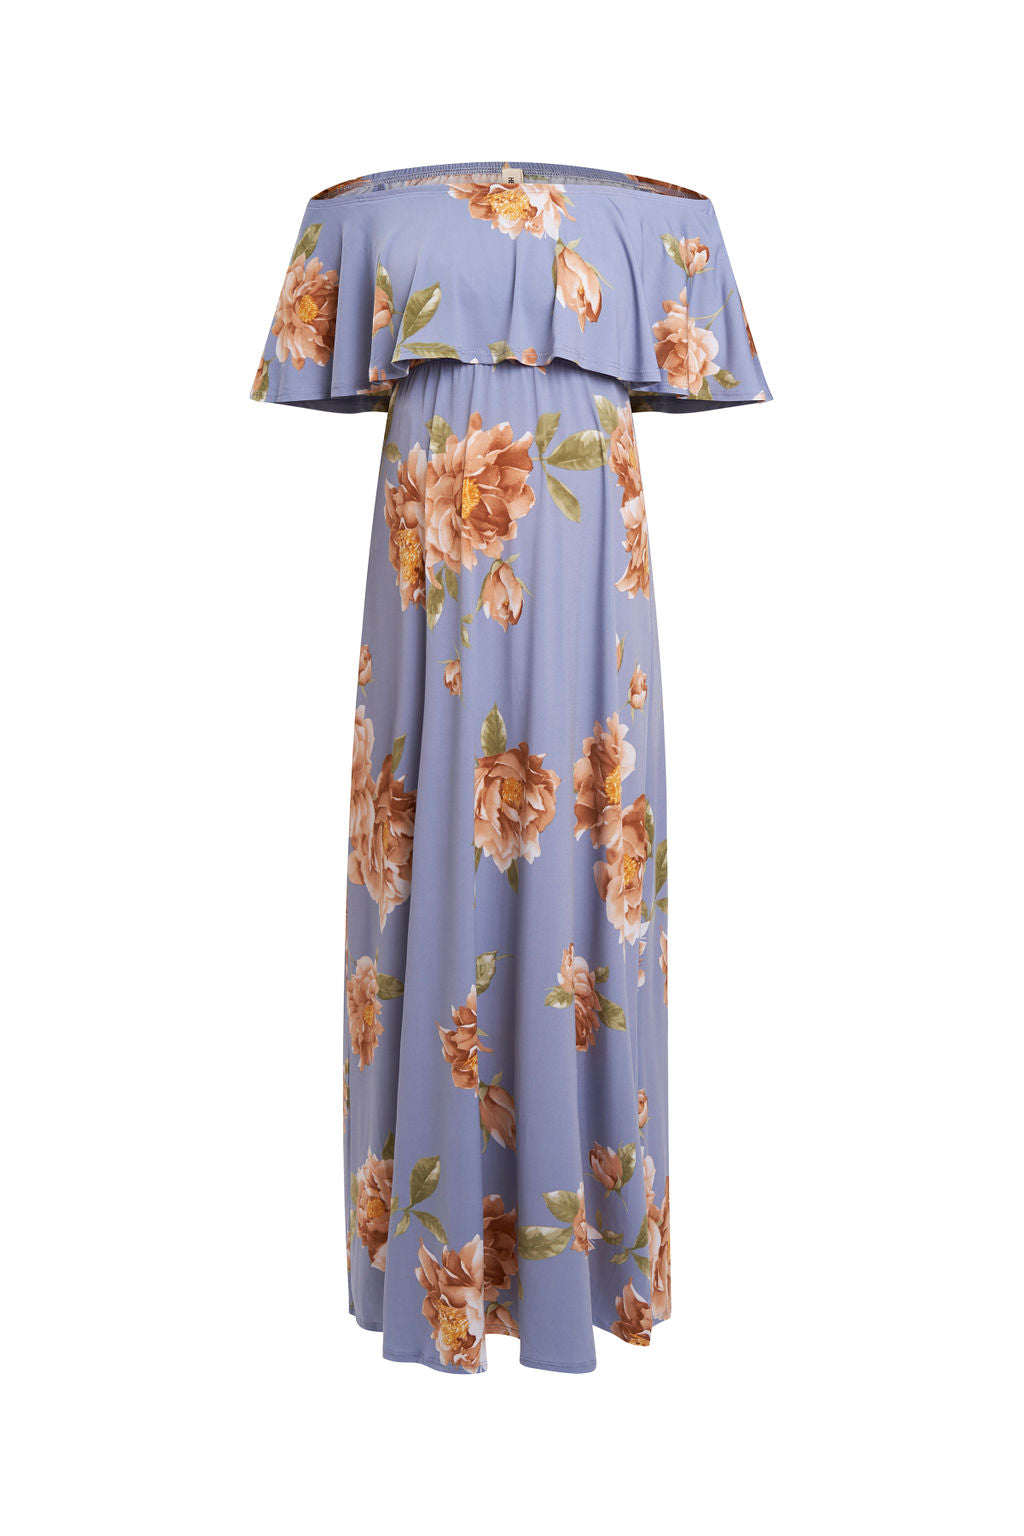 Blush Floral Cold Shoulder Maternity Dress – HotMommyAndMe